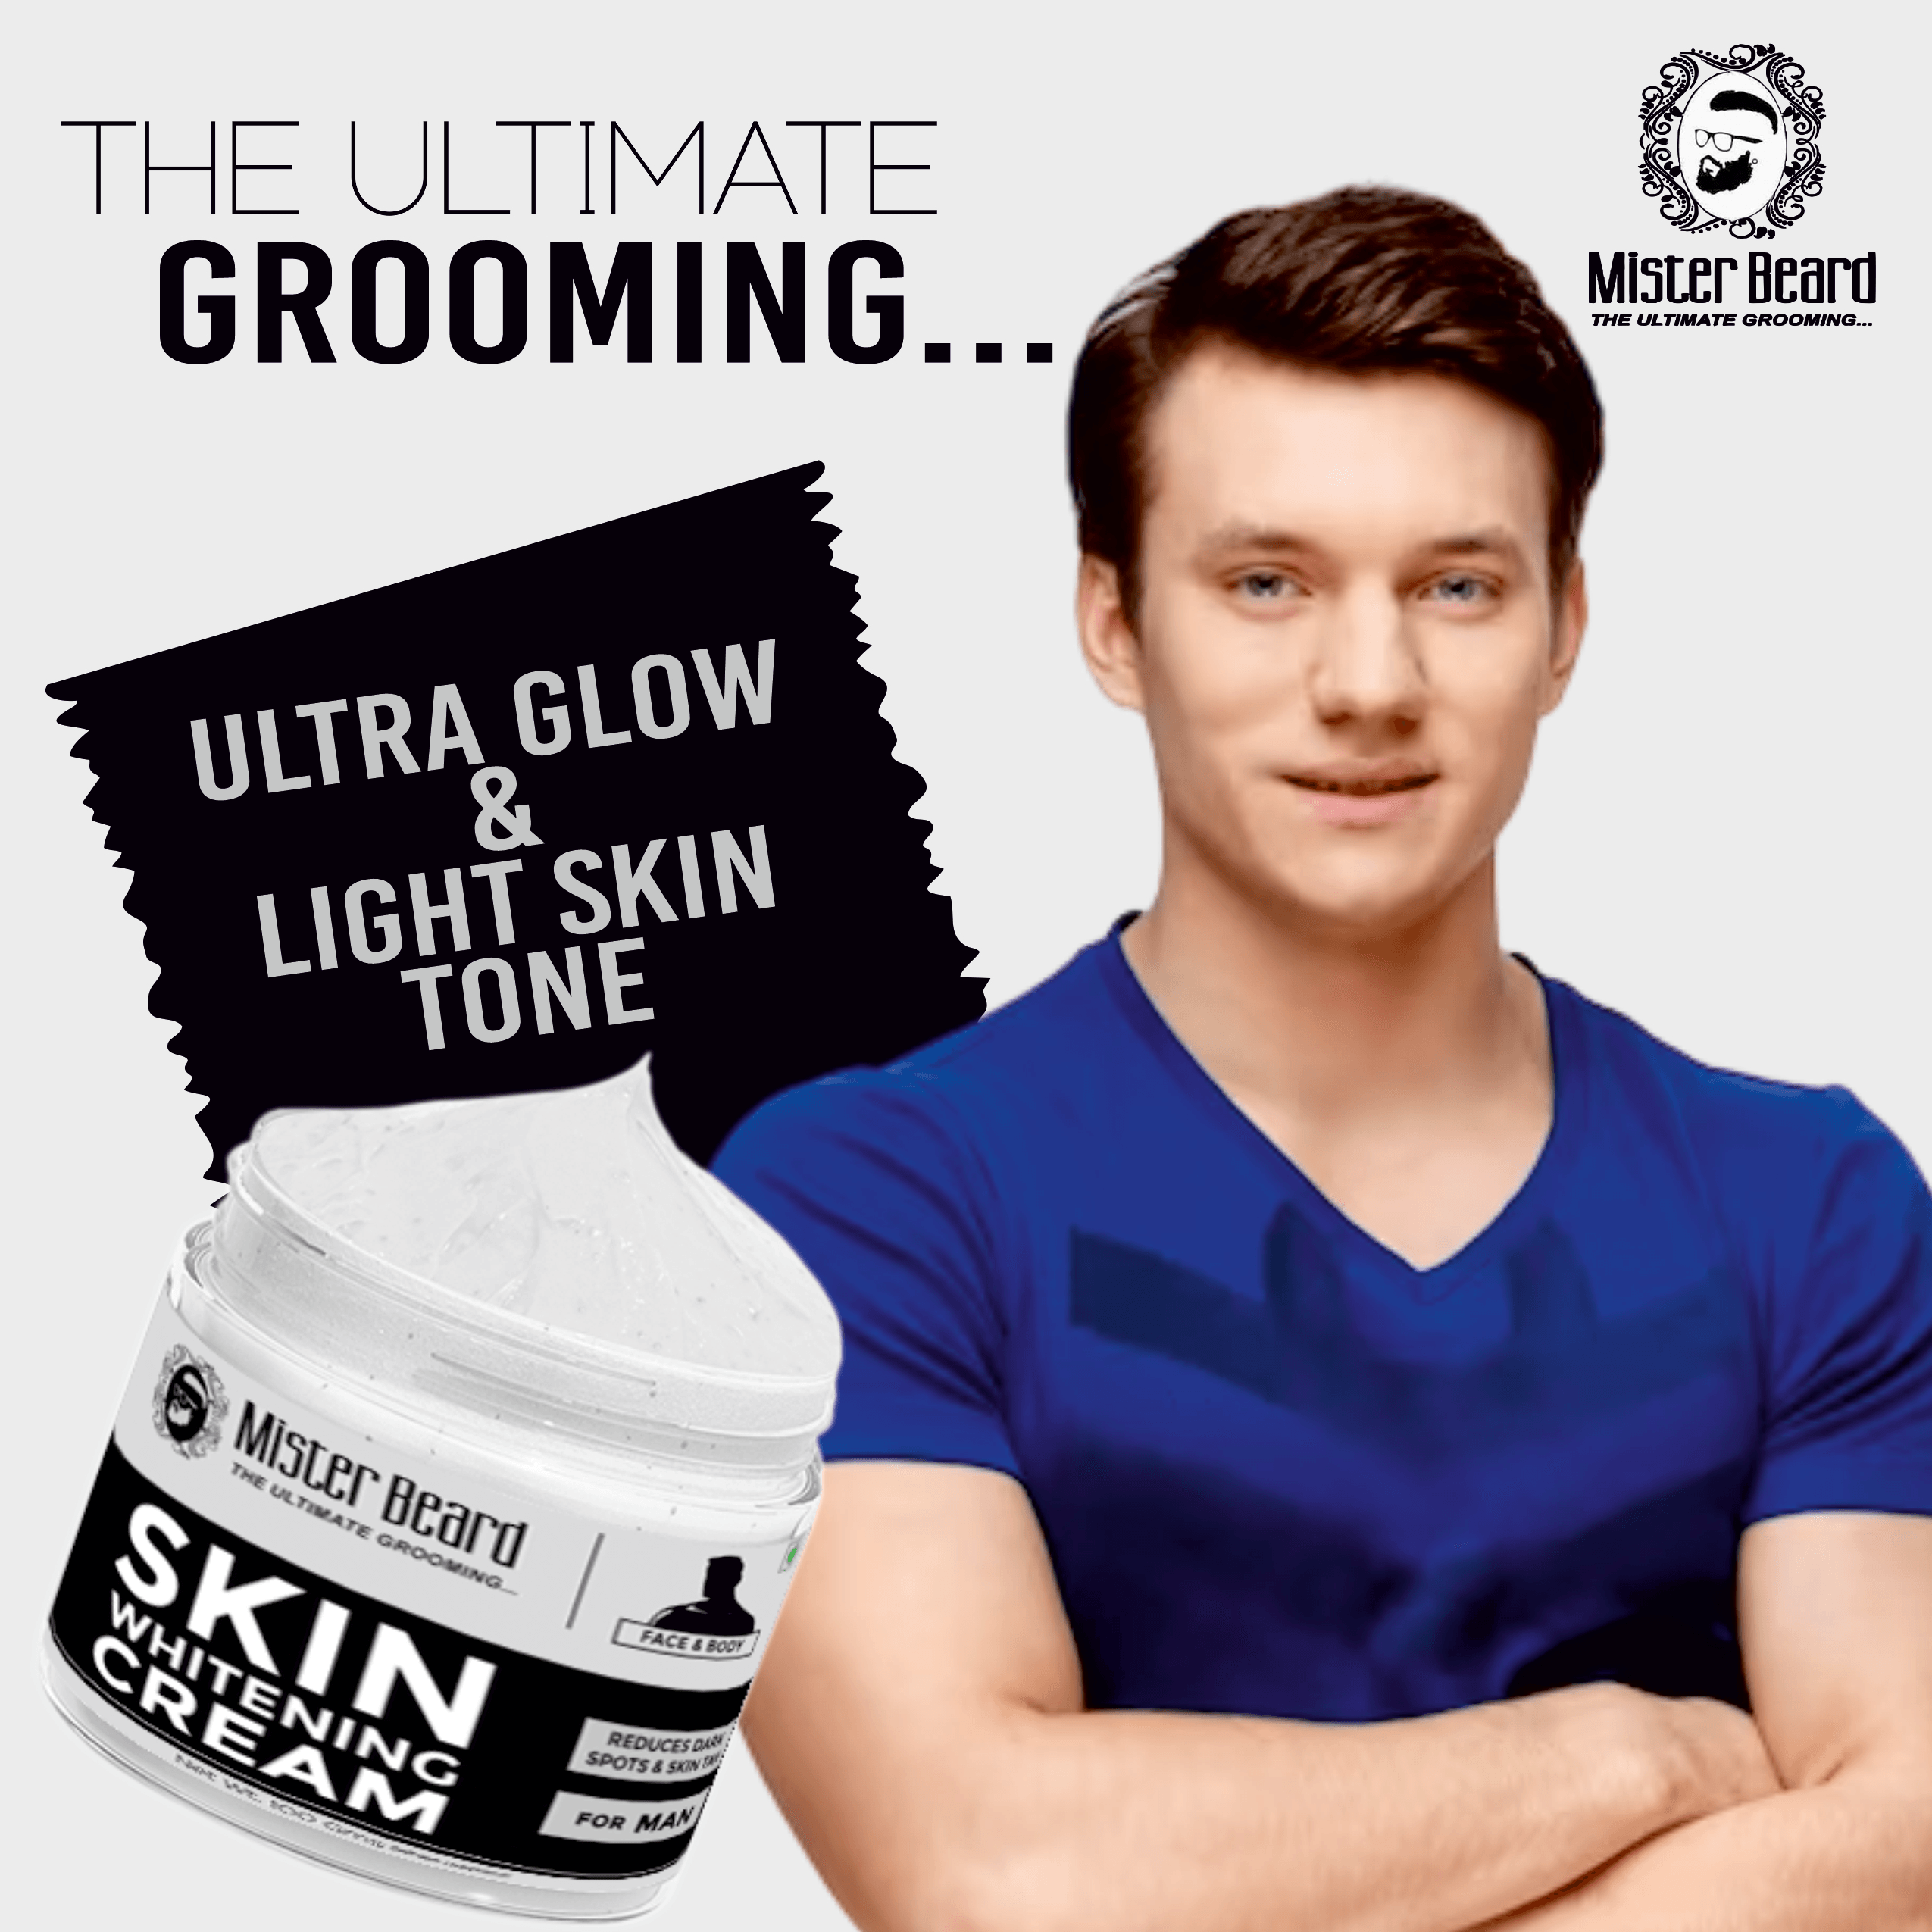 Mister Beard Skin Whitening Cream 100gm|Removes Fine Lines & Tanning, Lightens, Nourishes Skin - Pink Root